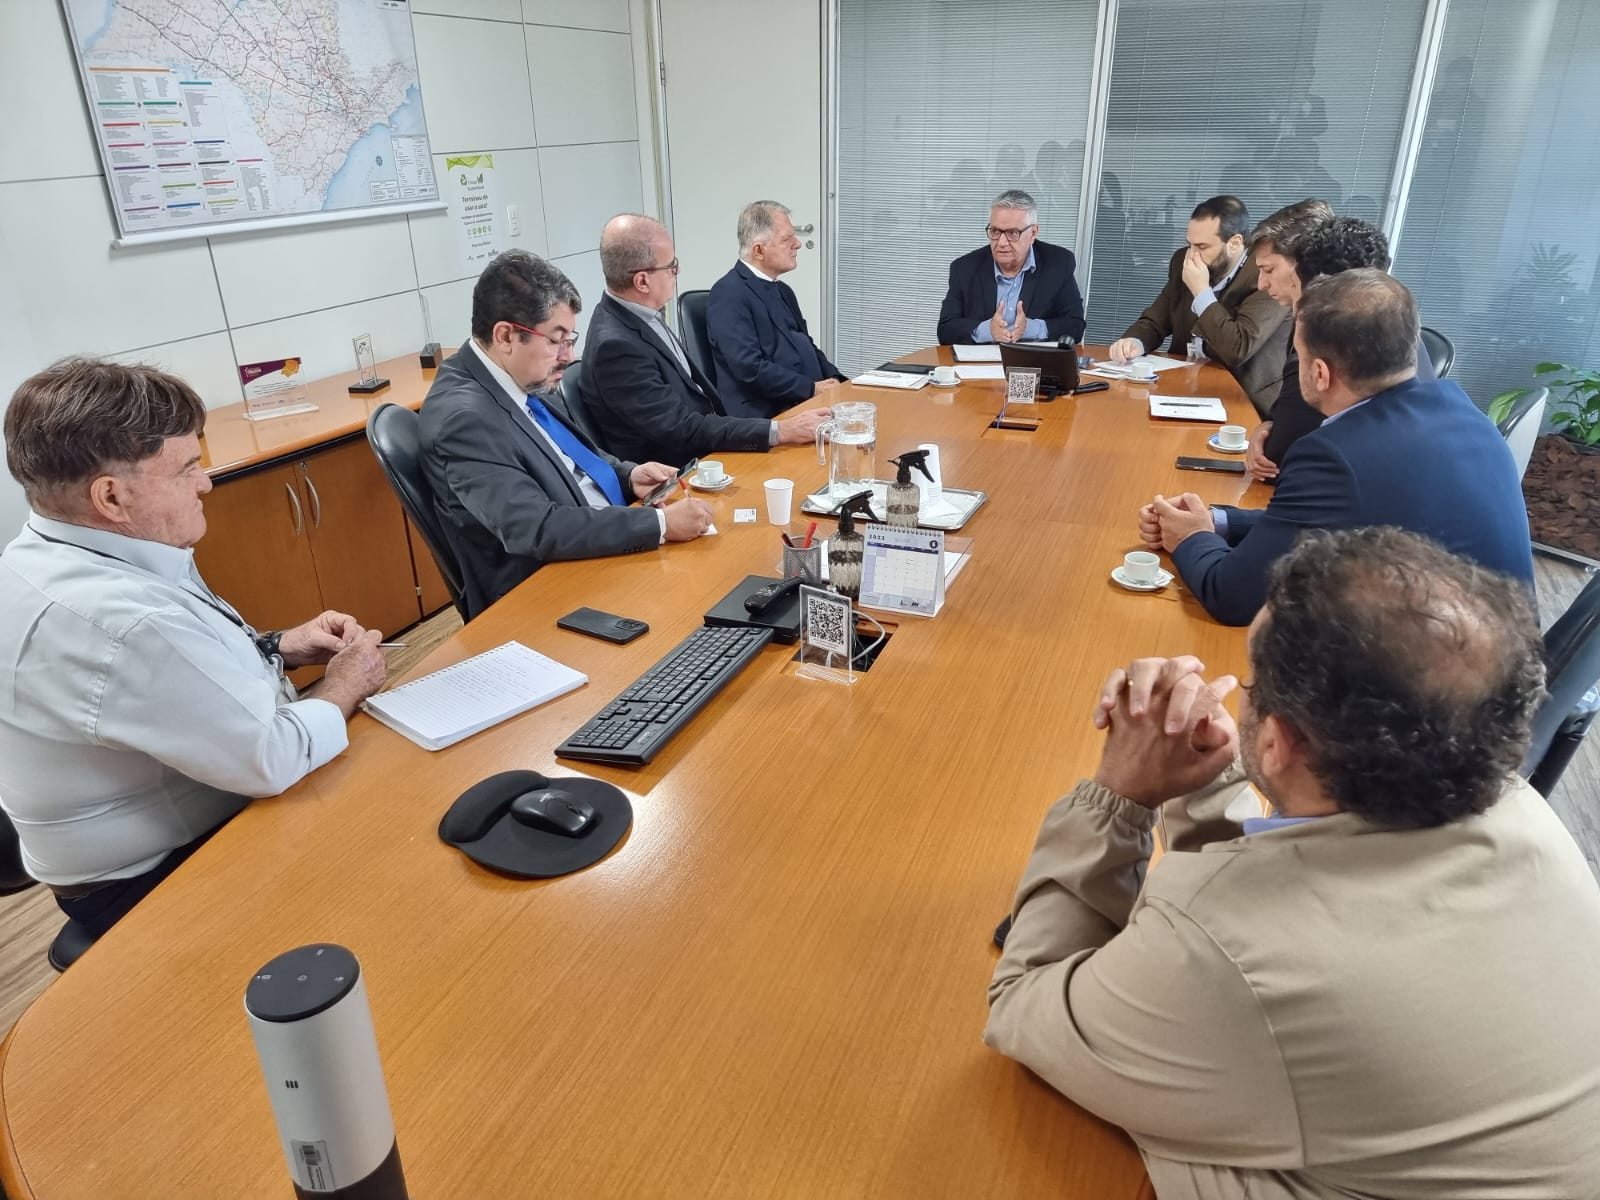 Deputado Bragato, Câmara Municipal, UEPP, Acipp, Abav-SP/Aviesp e Grupo Lidera reúnem-se com Artesp em busca de respostas sobre projeto do aeroporto prudentino